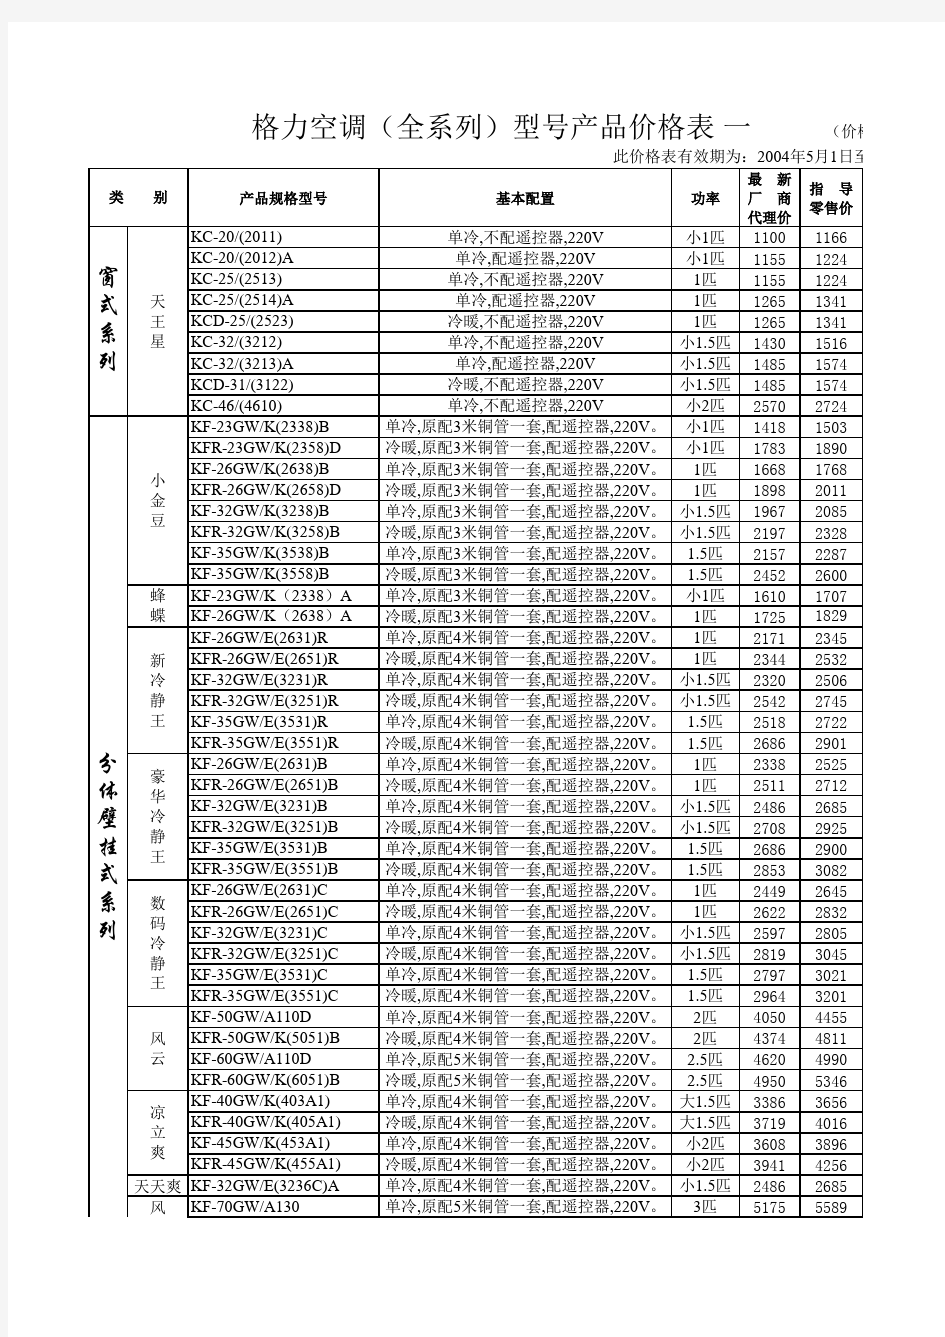 格力空调(全系列)型号产品价格表.xls